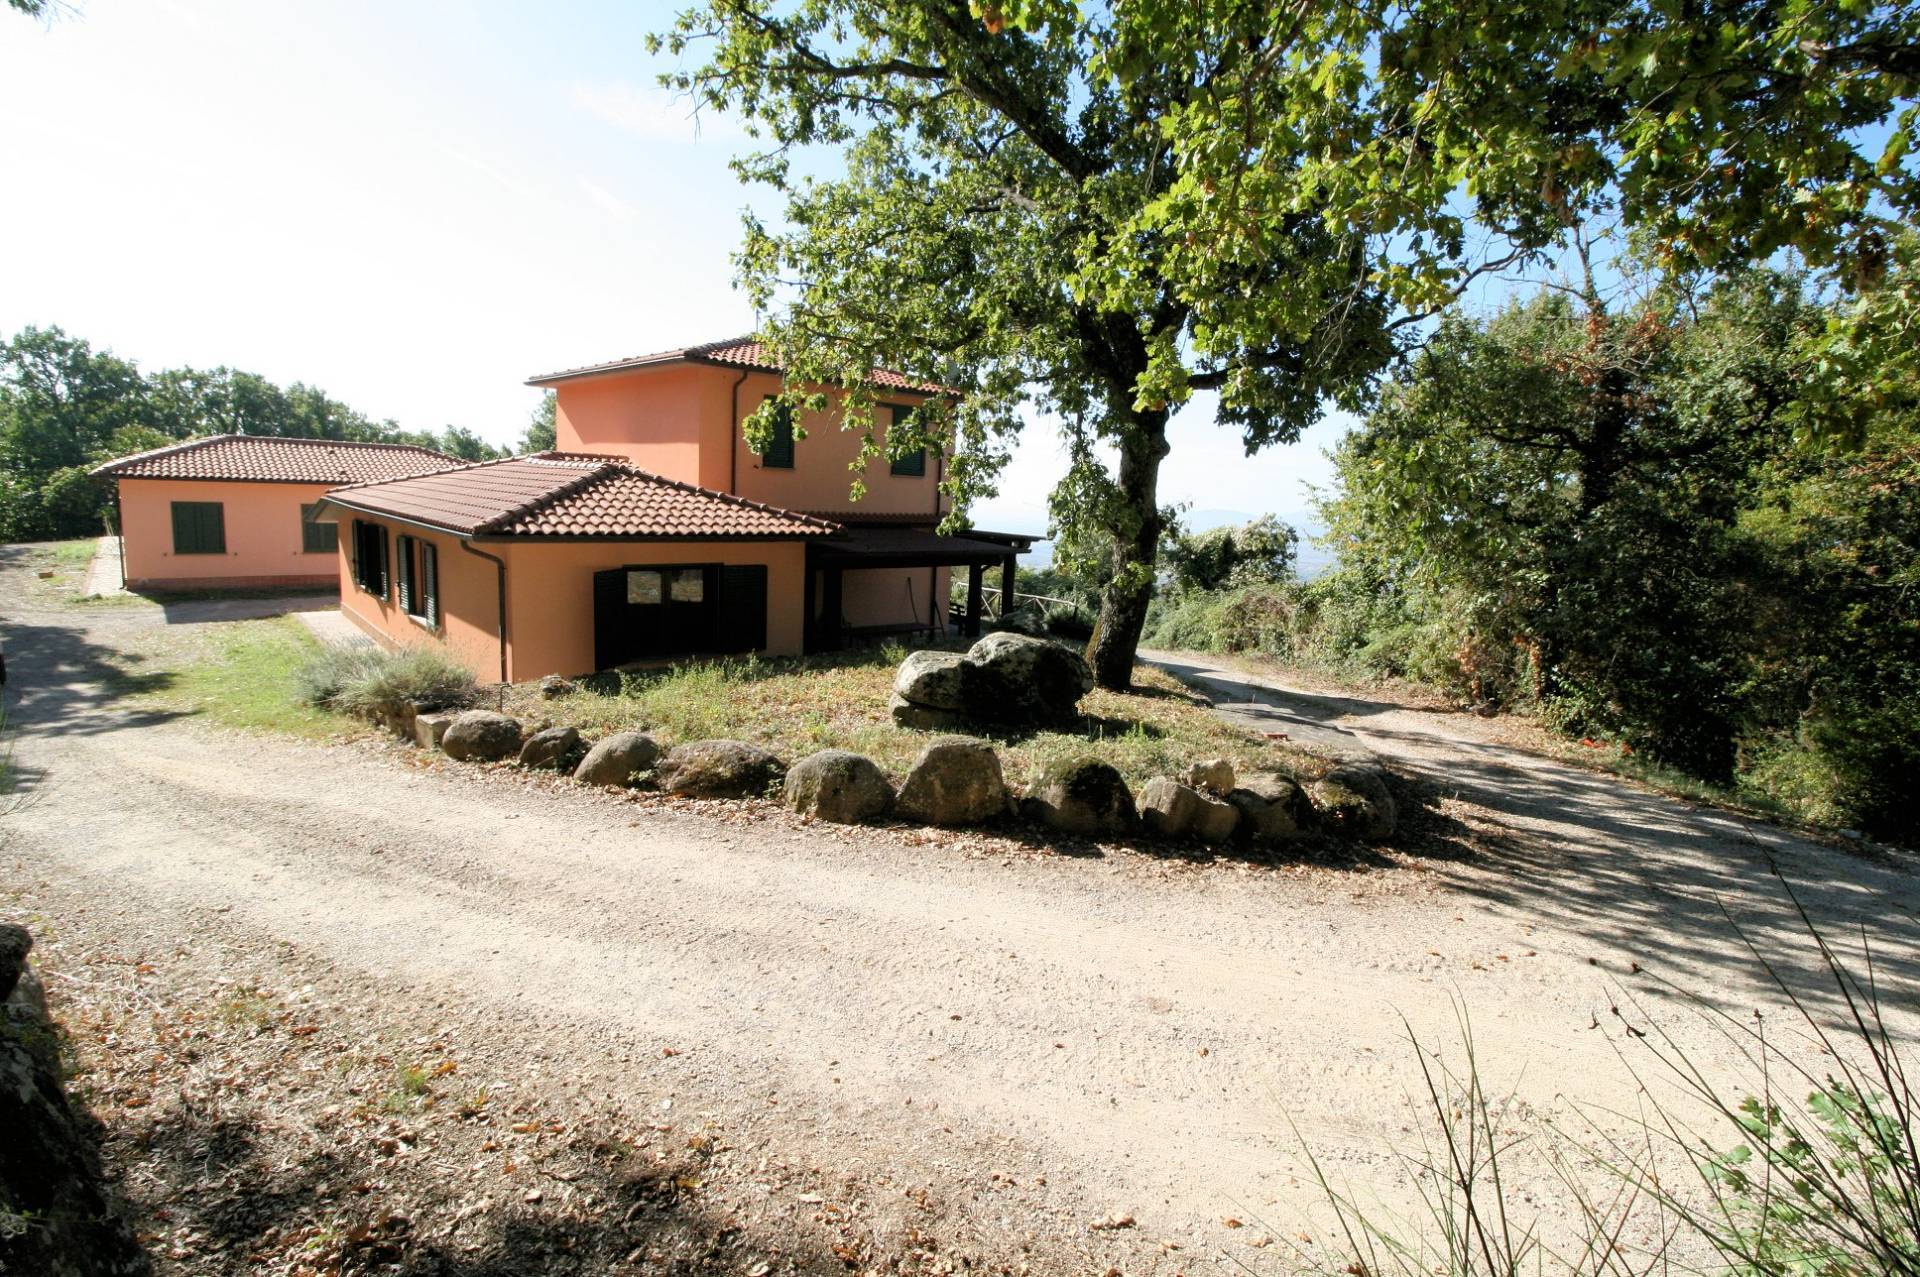 1487-Azienda agricola in posizione collinare e panoramica-Roccastrada-1 Agenzia Immobiliare ASIP